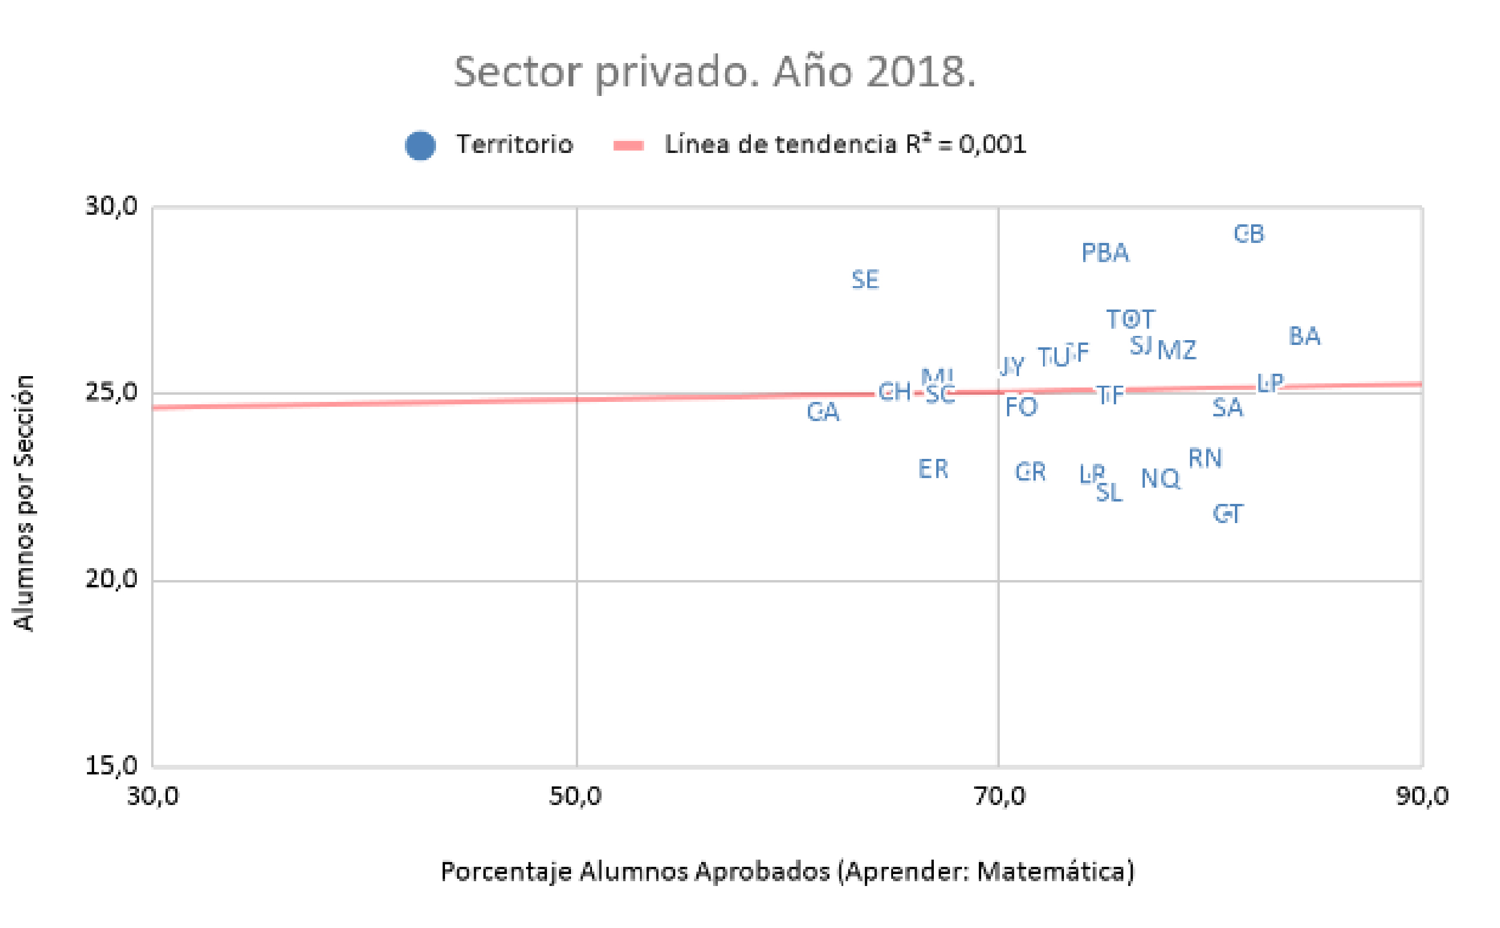 Gráfico 3.
Alumnos por sección y resultados de Aprender. Nivel primario. 
Sector privado. Total país y provincias.
Año 2018.